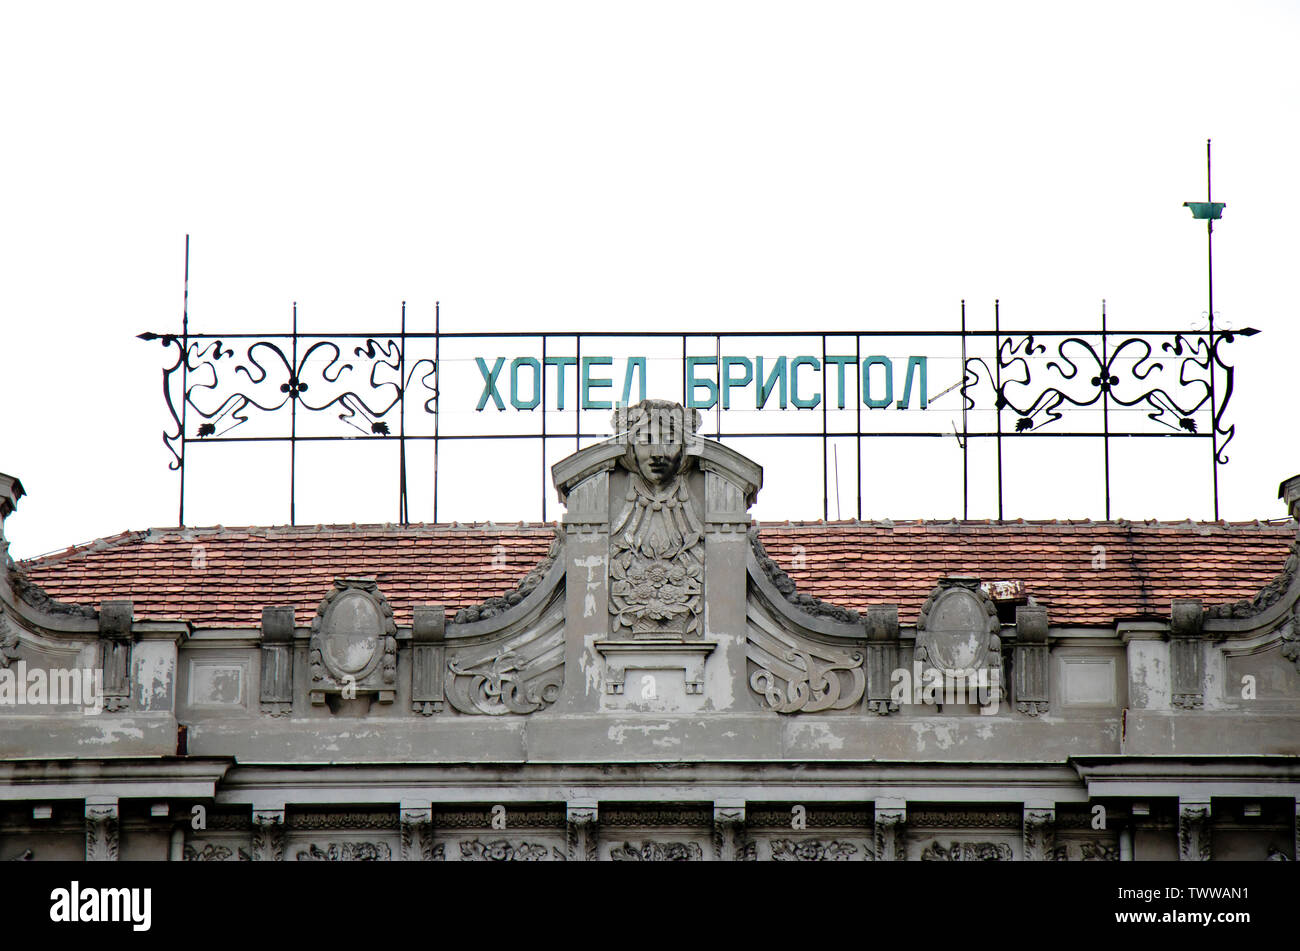 Belgrad, Serbien - Mai 7, 2019: Altes Hotel Bristol Zeichen auf dem Dach, kyrillische Buchstaben und art deco Jugendstil Ornamente Stockfoto